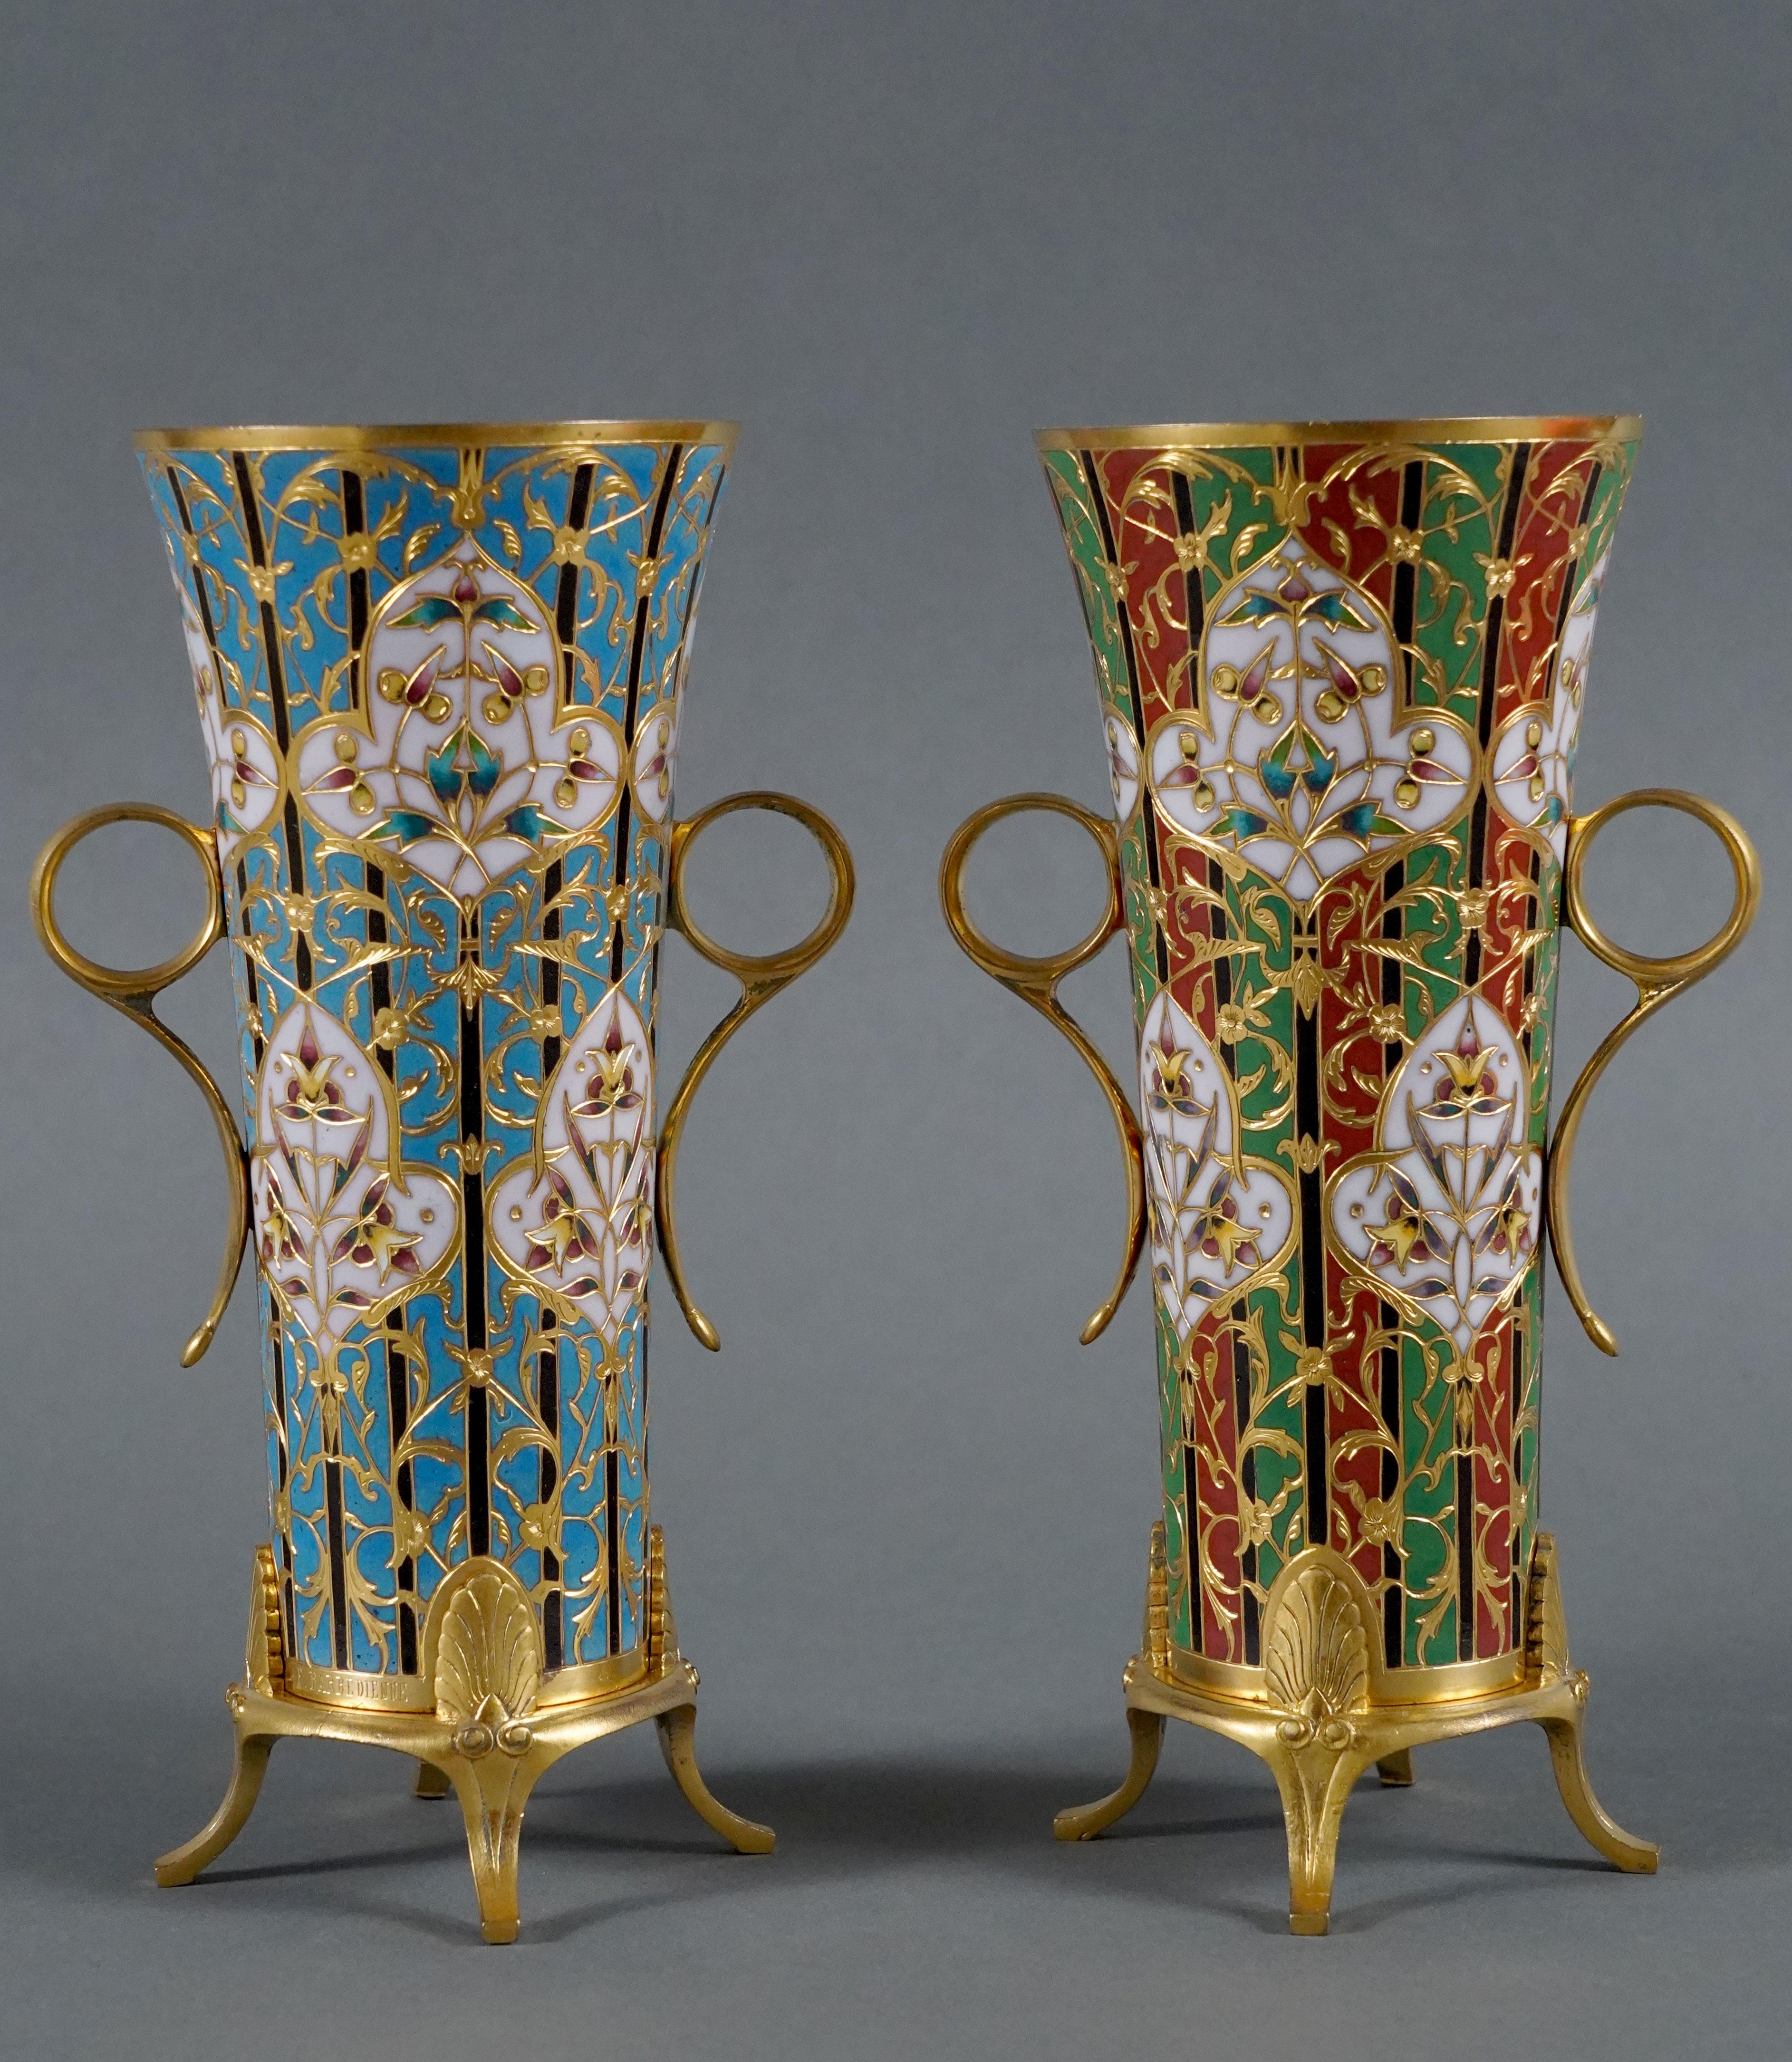 Signé F. Barbedienne

Une paire de charmants  vases en forme de trompette en bronze doré avec une décoration en émail cloisonné polychrome, l'un bleu et l'autre vert et rouge. Ils comportent deux poignées annulaires et reposent sur quatre pieds